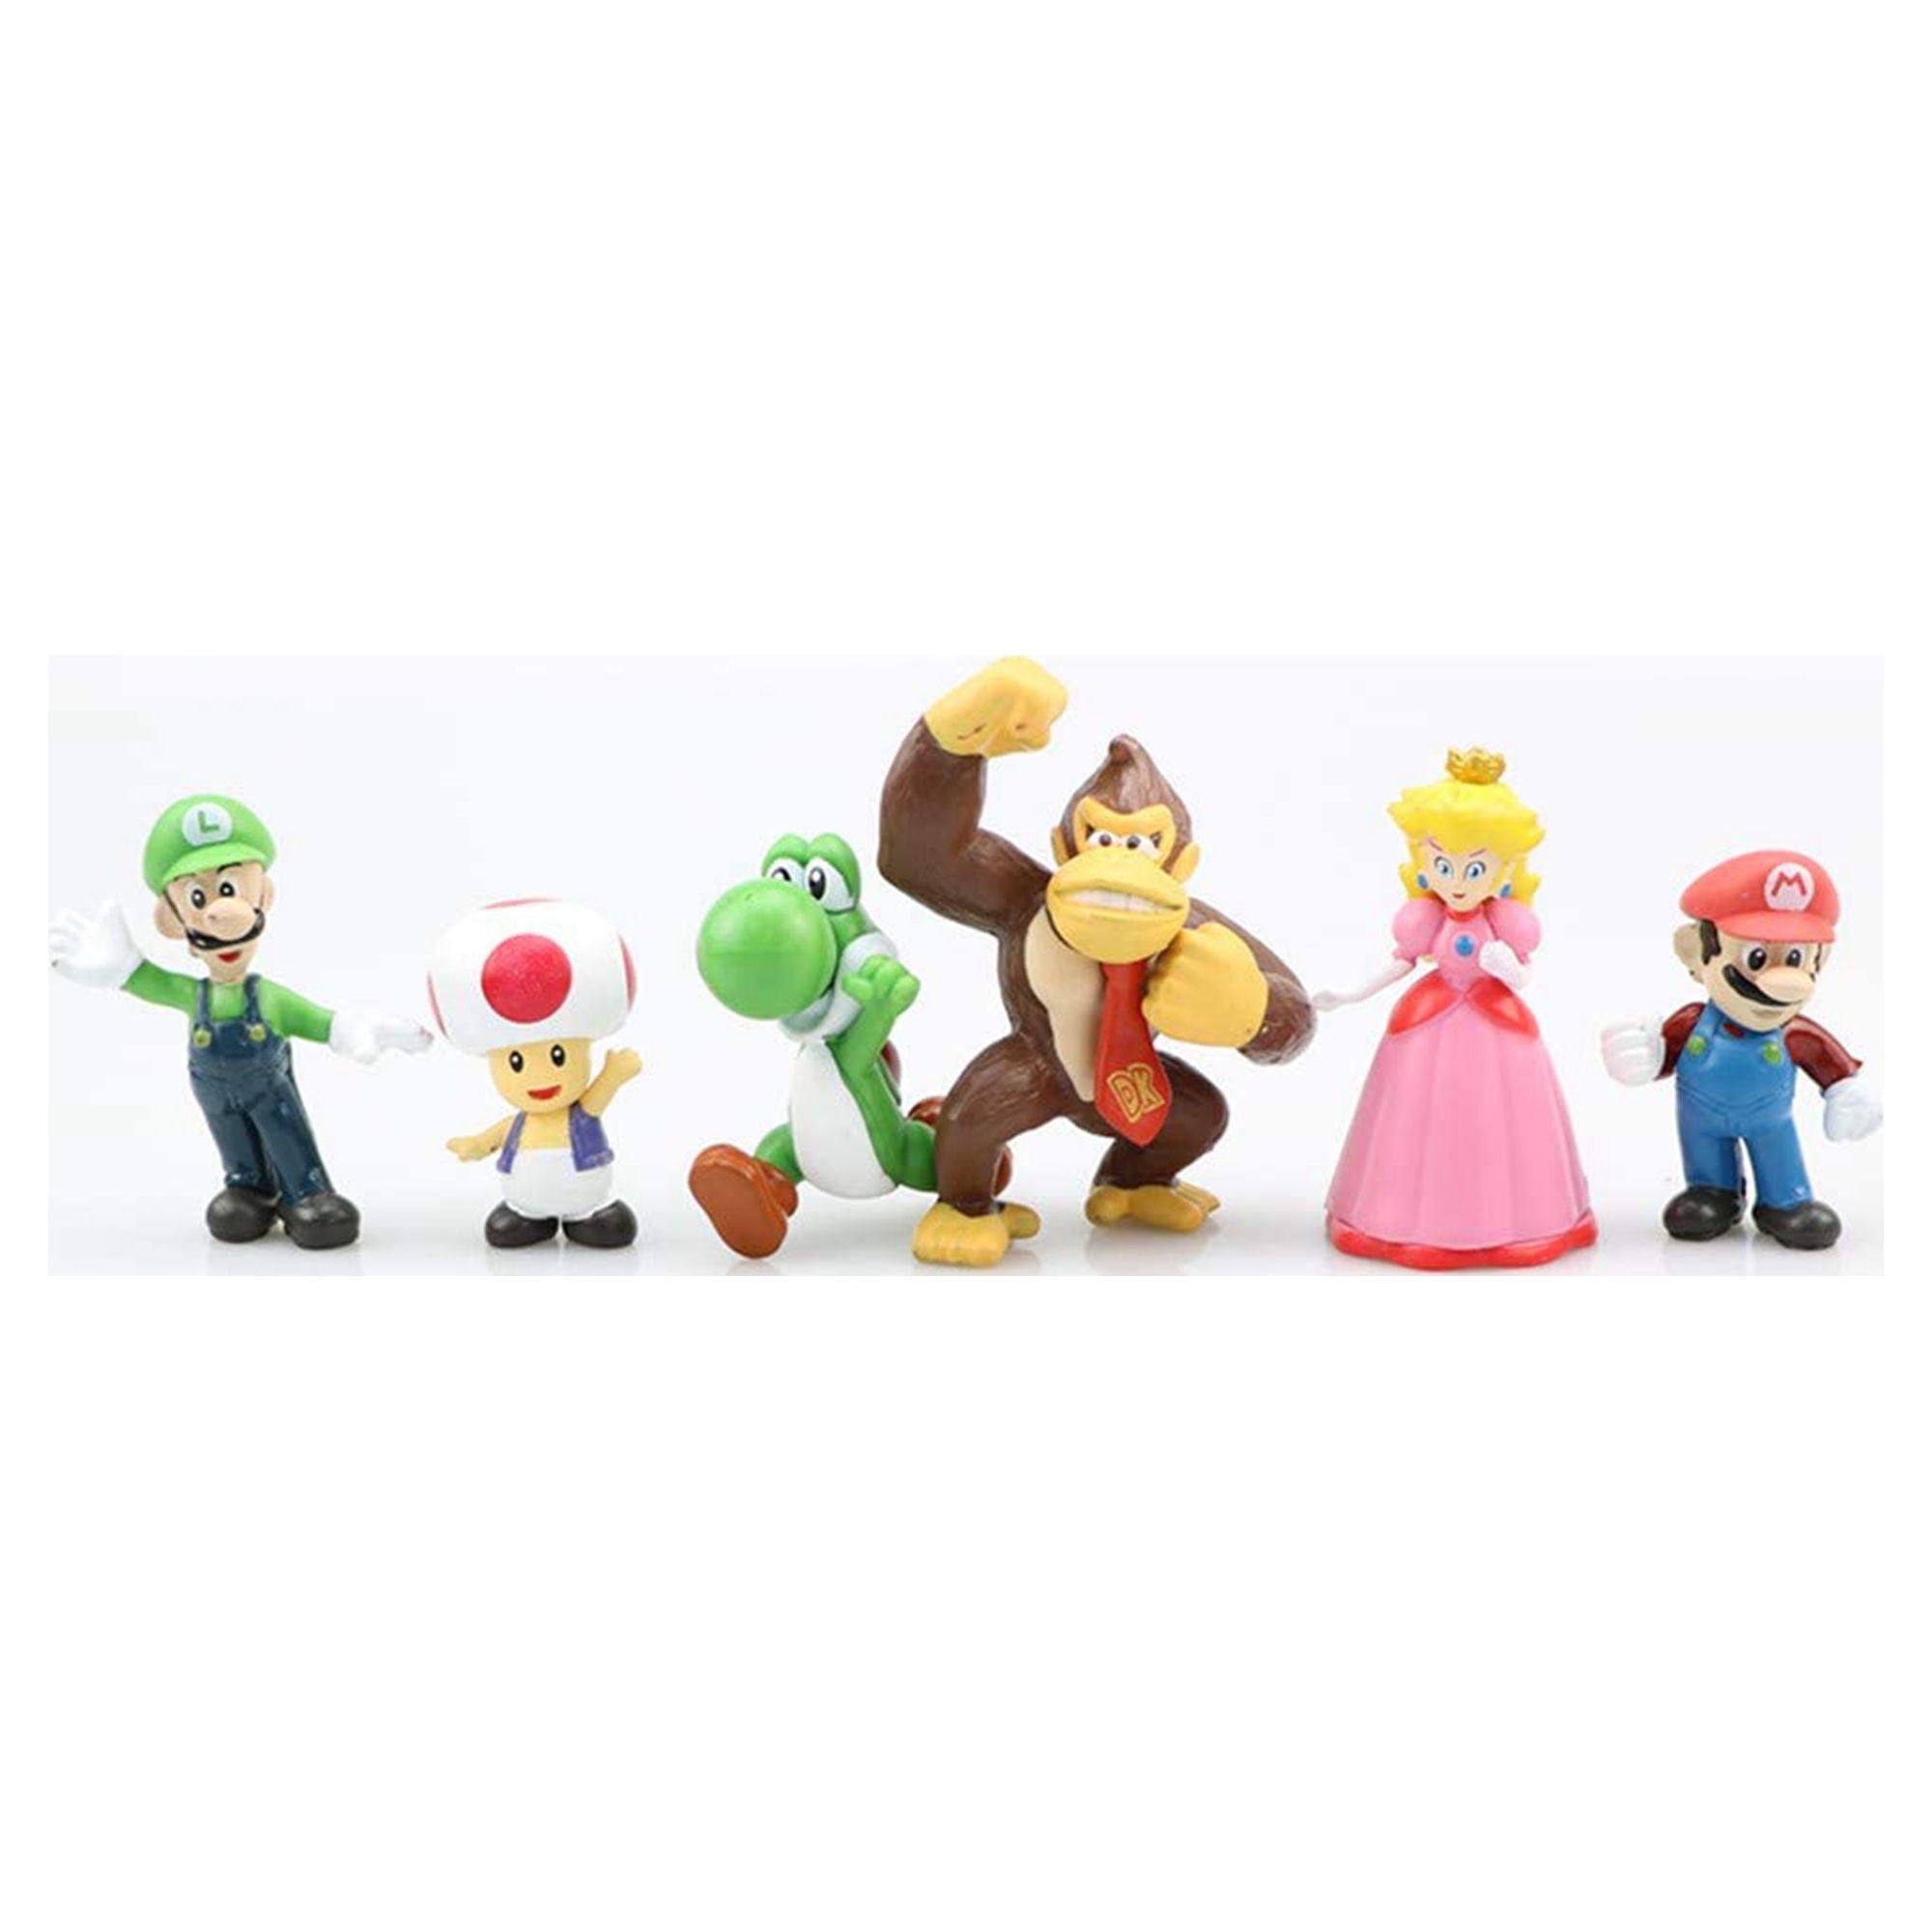 Popco Super Mario Series 1 Set of 6 Mini Party Figures Mario, Peach, Toad,  Luigi, Yoshi Donkey Kong